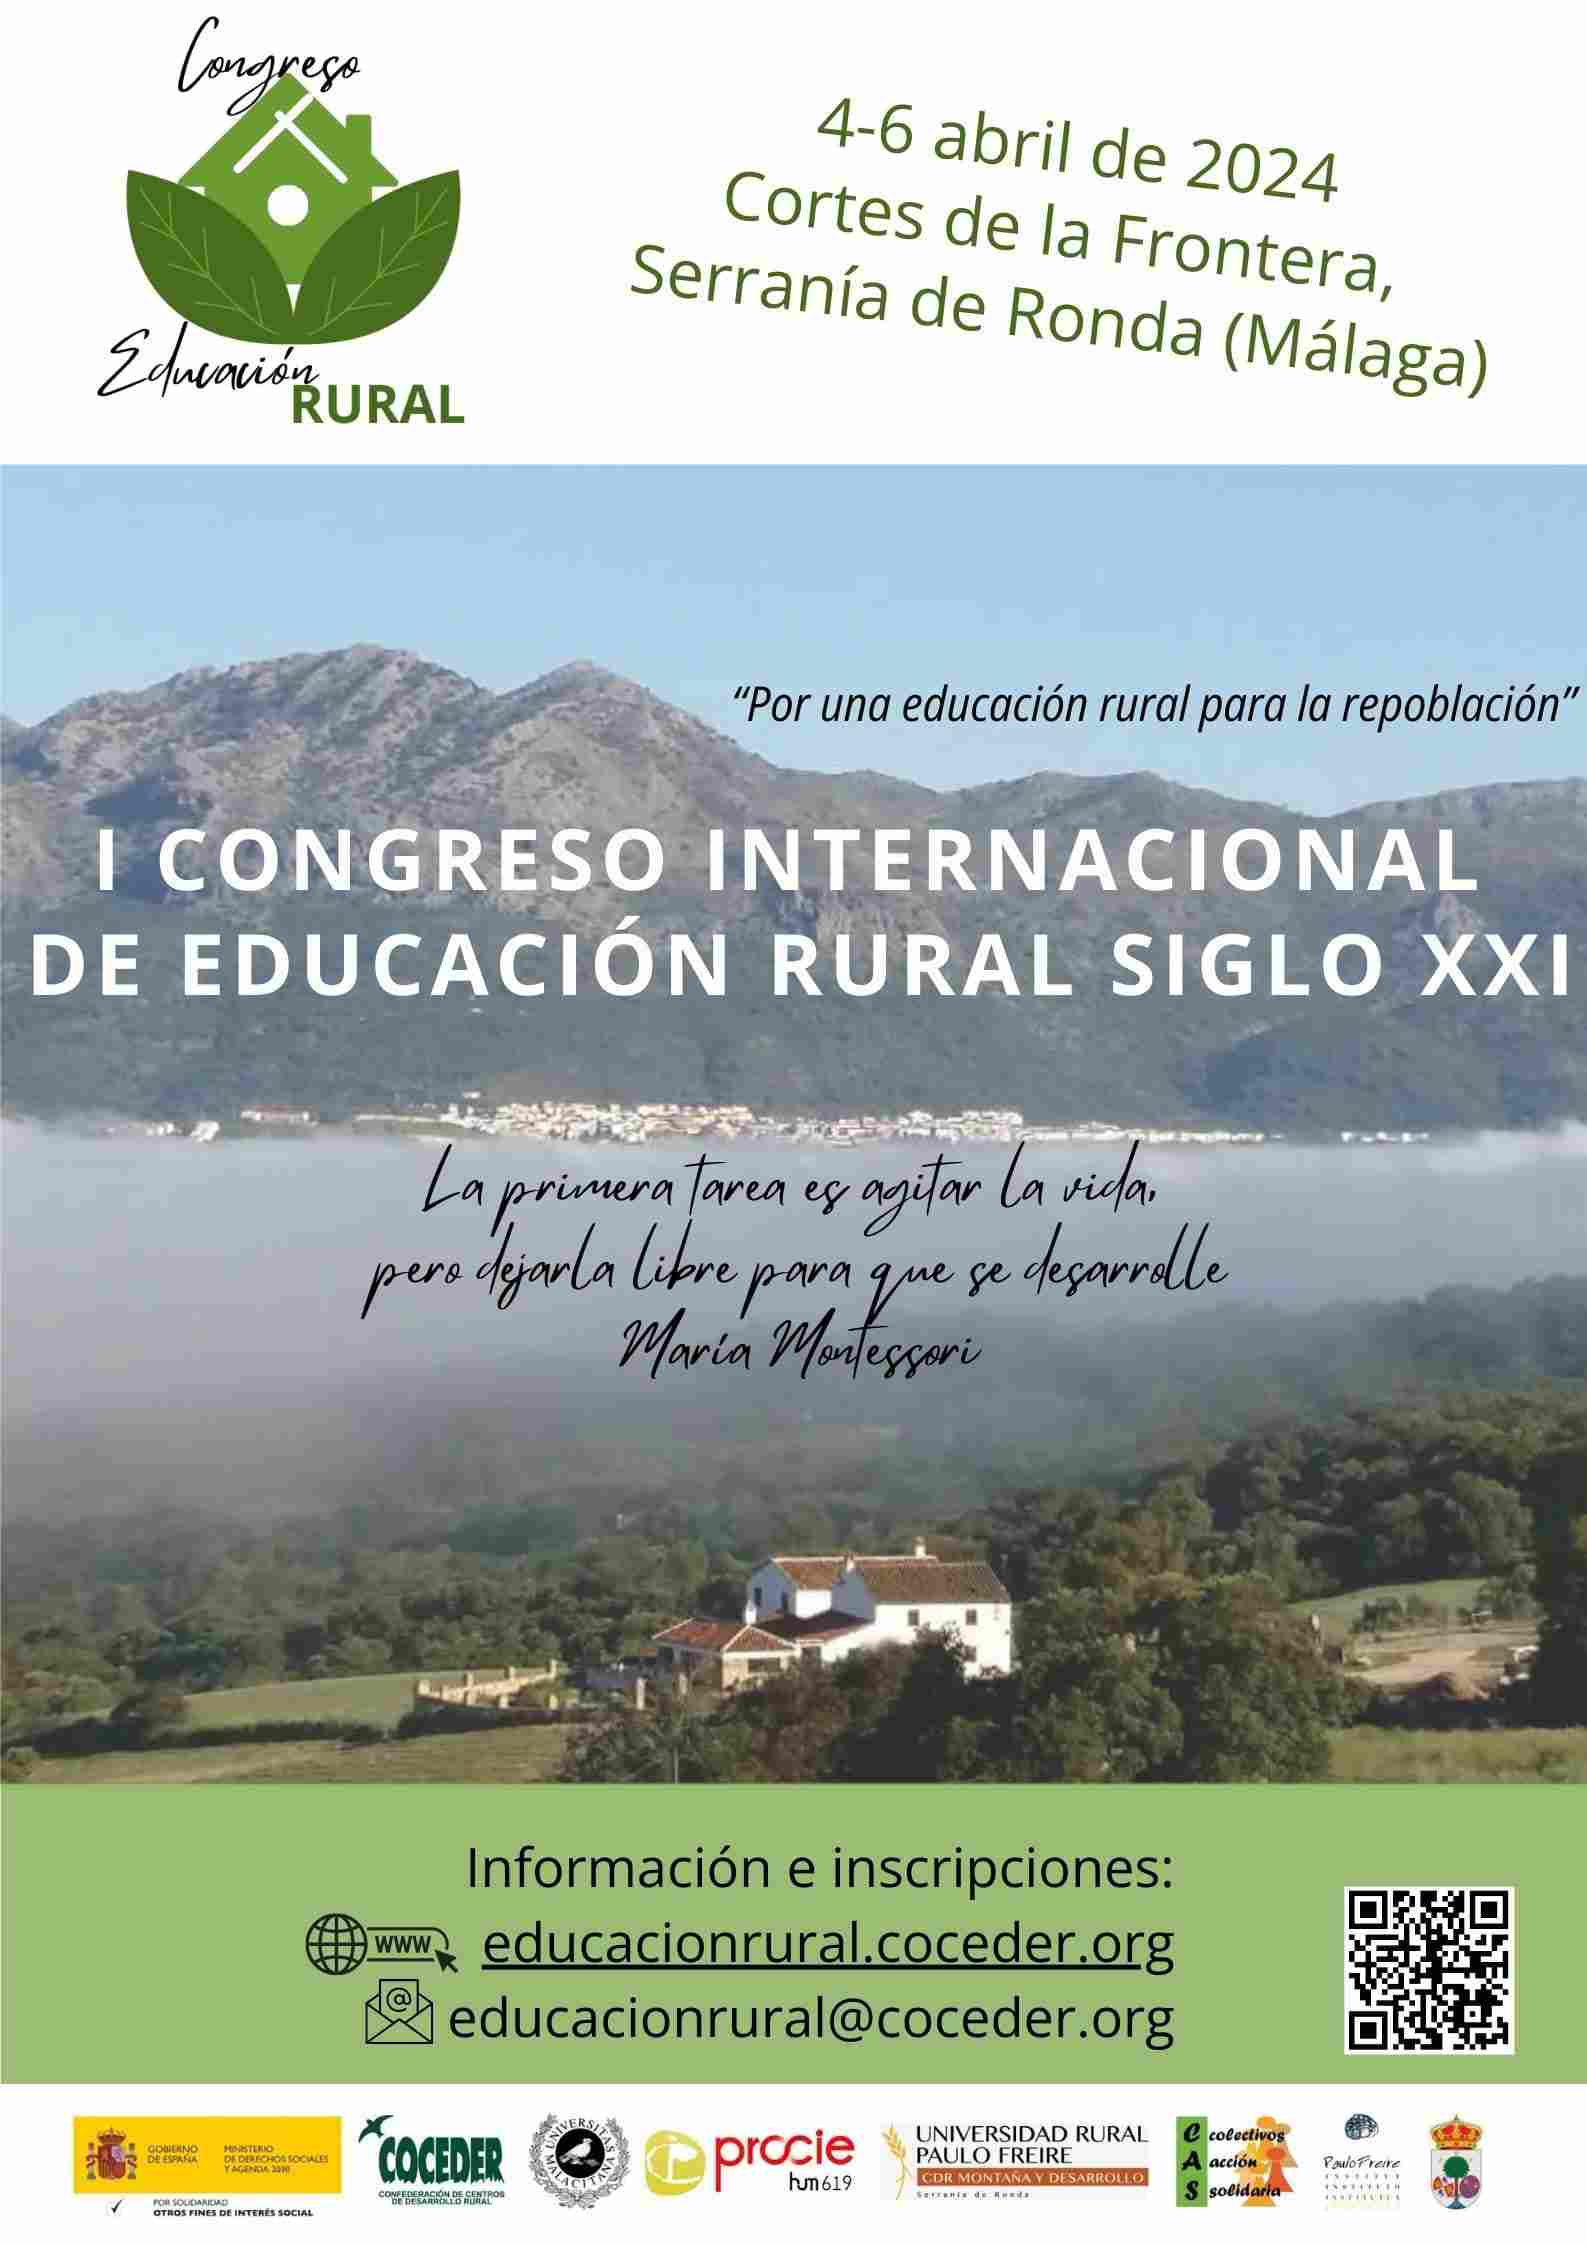 El I congreso de educación rural tendrá lugar en la Serranía de Ronda en abril de 2024